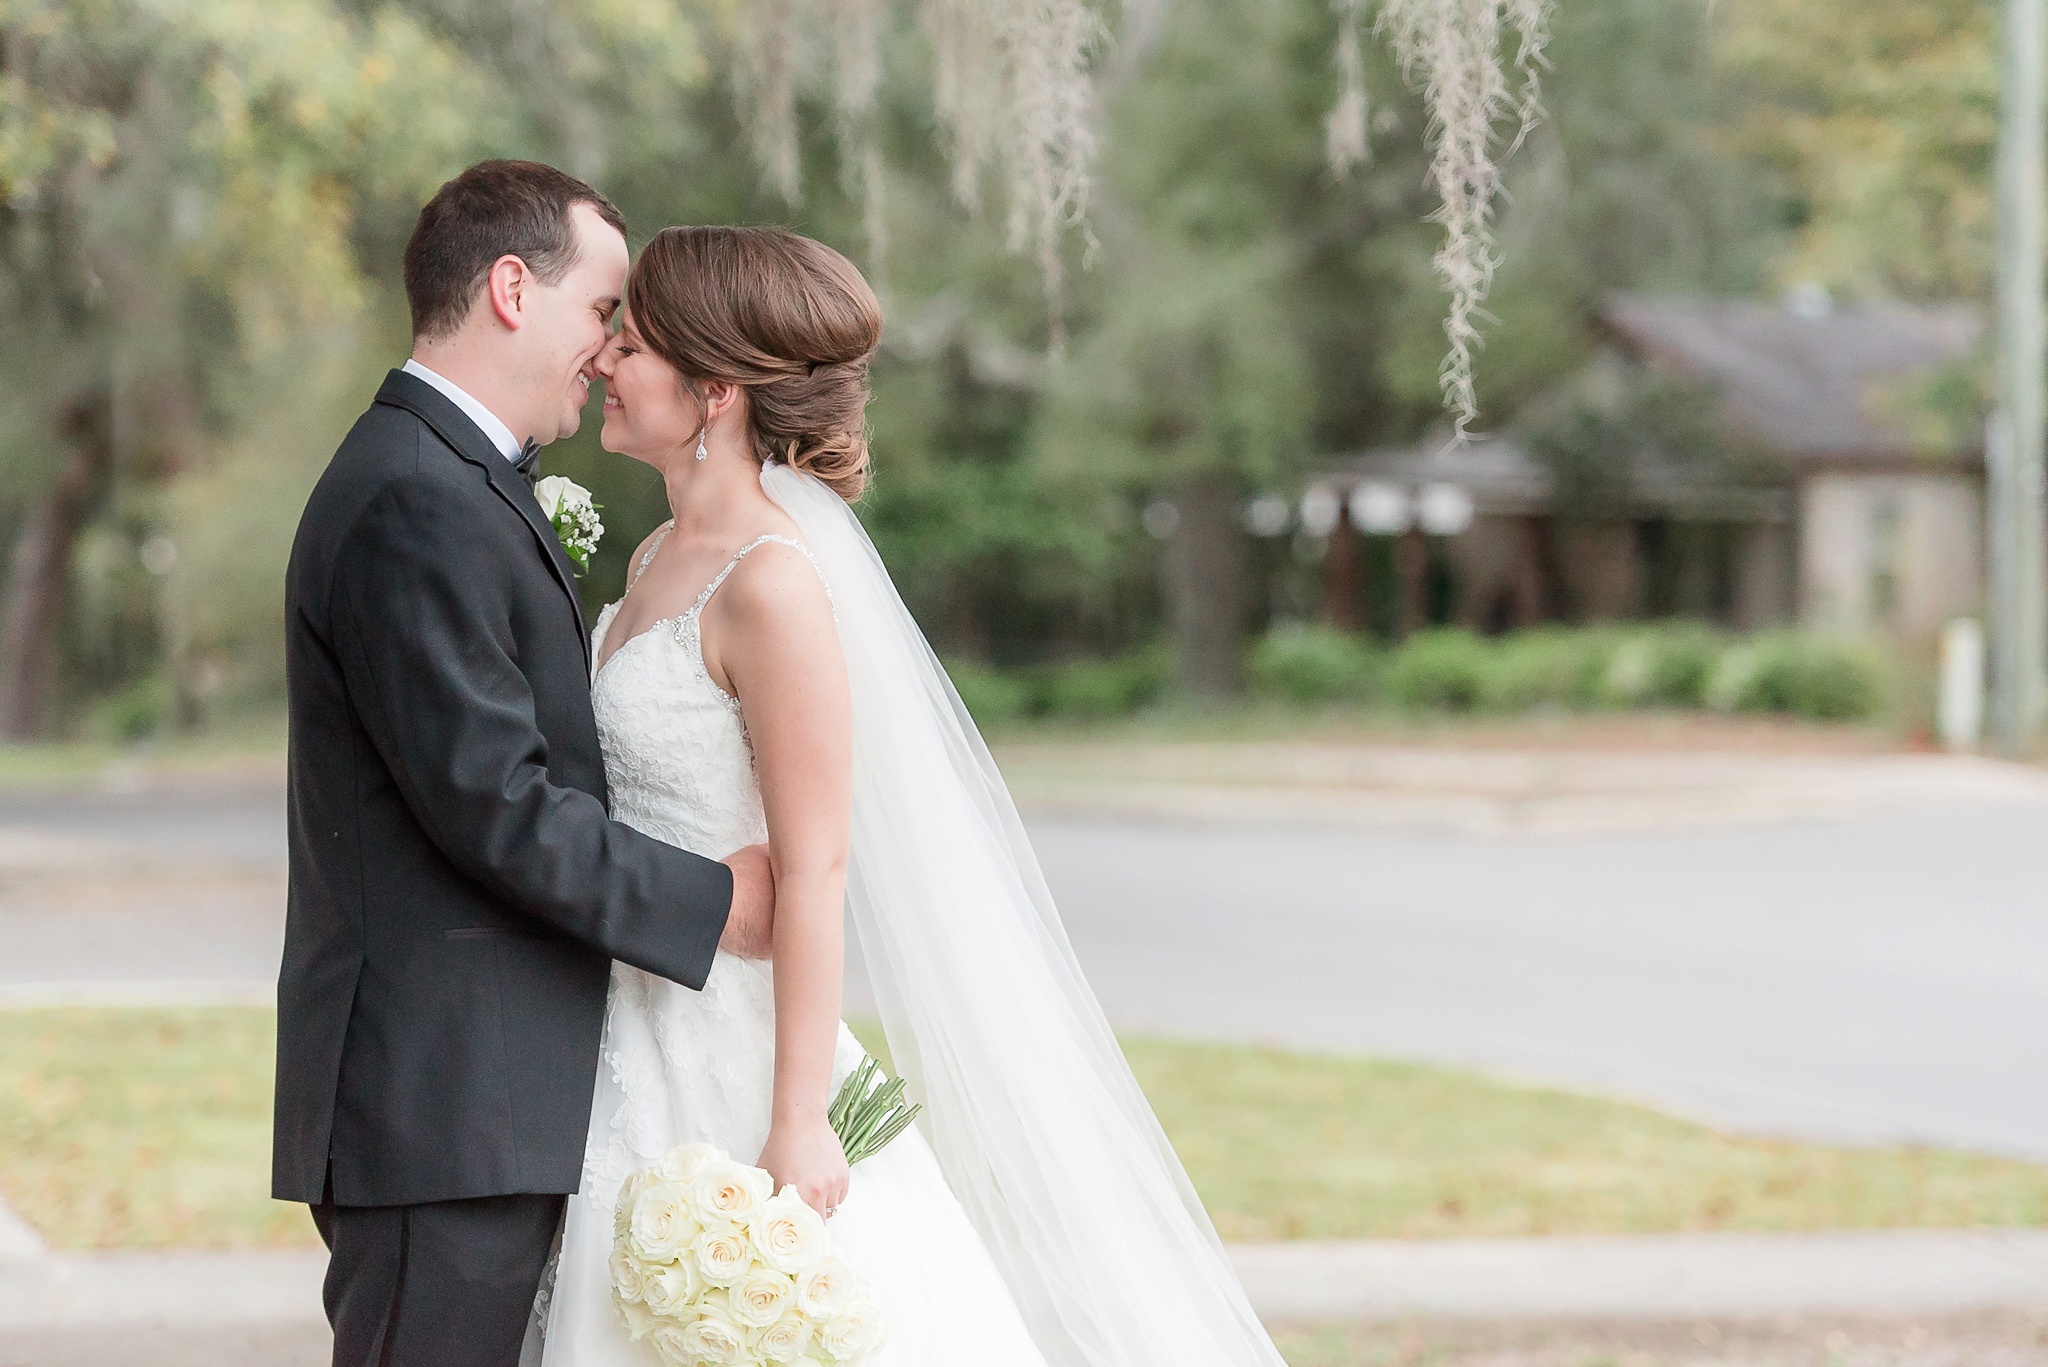 Niceville Destin Florida Wedding | Birmingham Alabama Wedding Photographers_0035.jpg